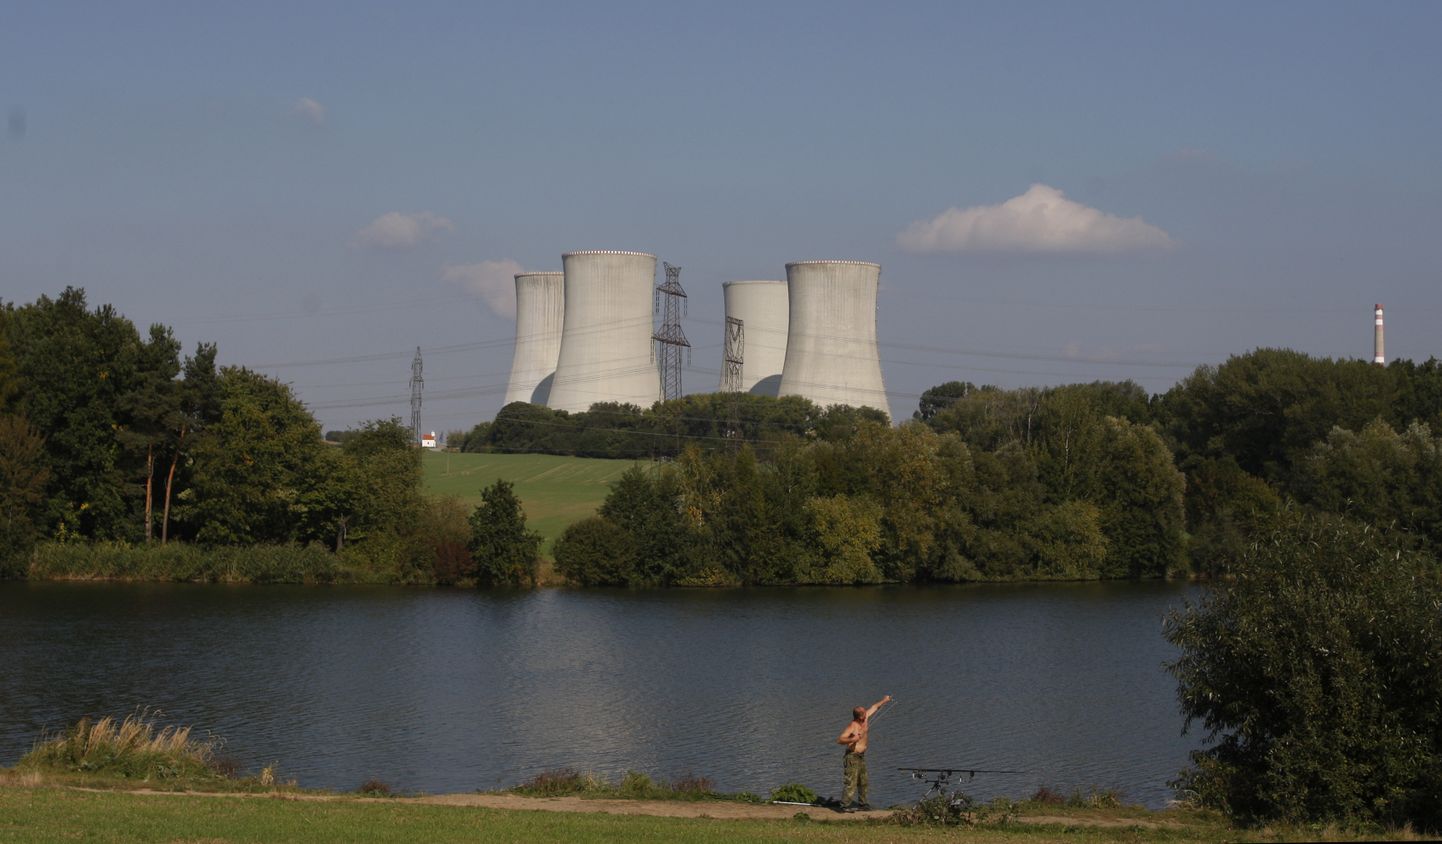 Dukovanu atomelektrostacija